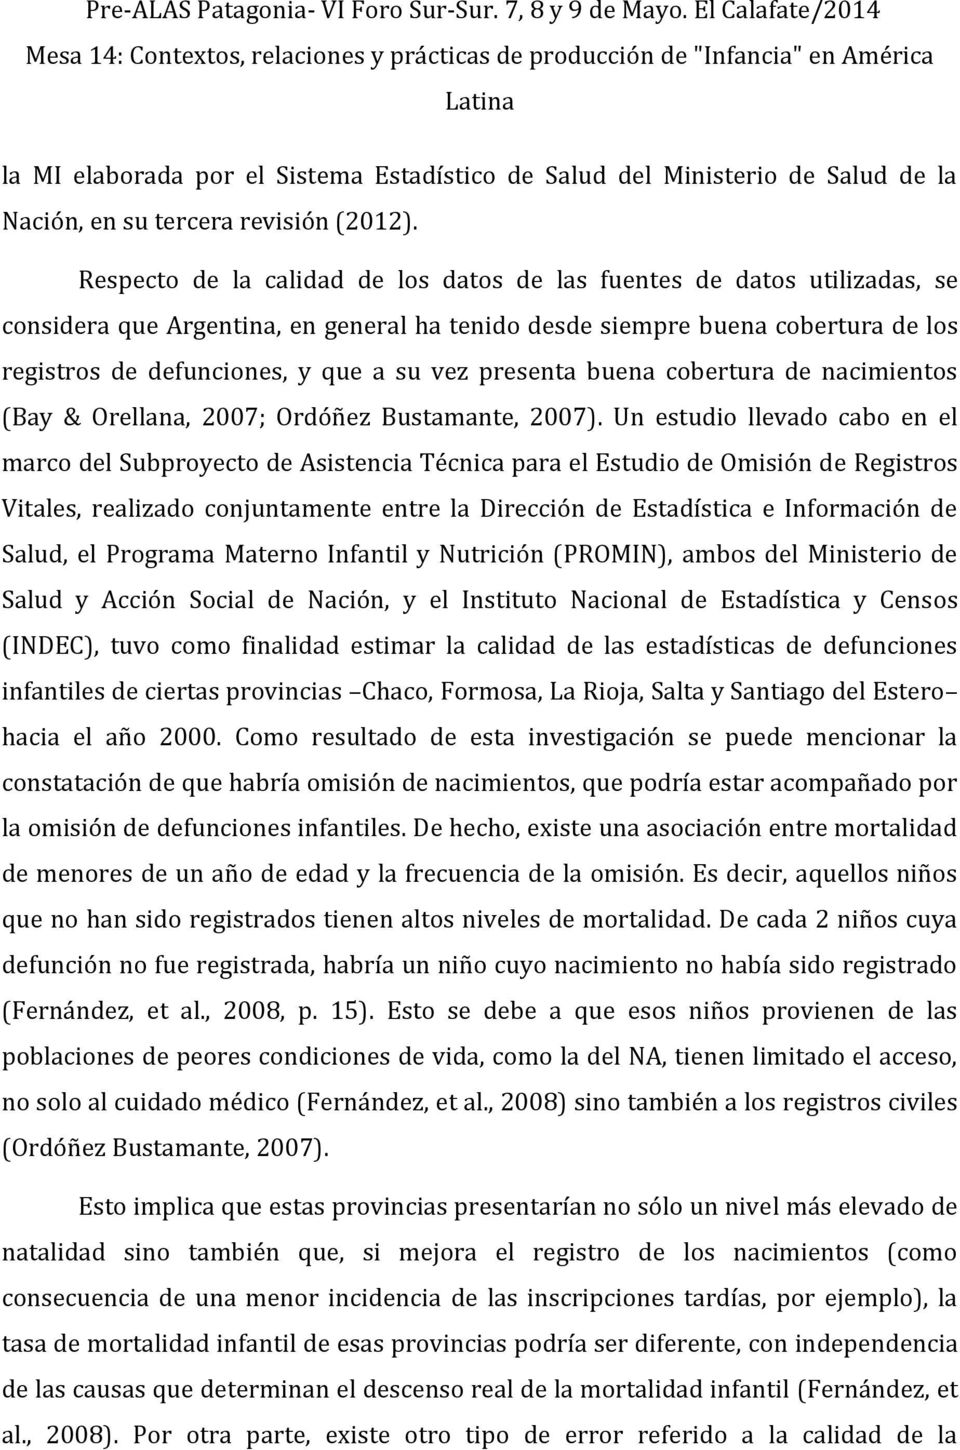 presenta buena cobertura de nacimientos (Bay & Orellana, 2007; Ordóñez Bustamante, 2007).